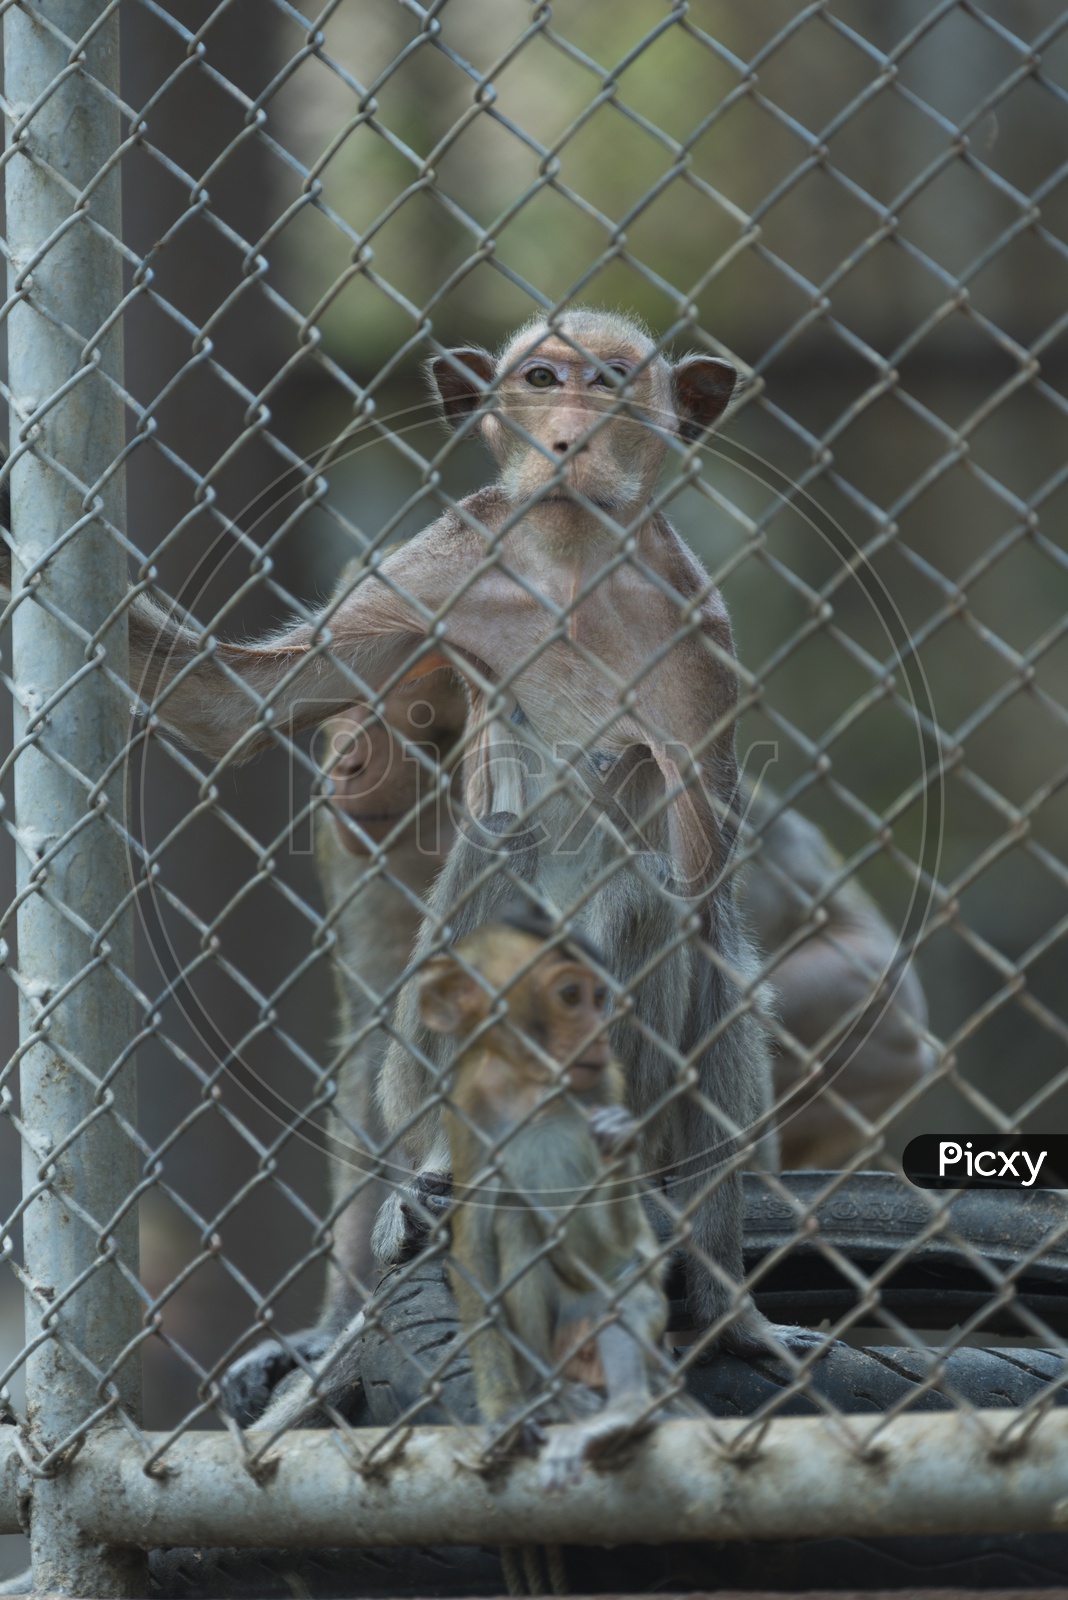 Monkeys in cage, Thailand